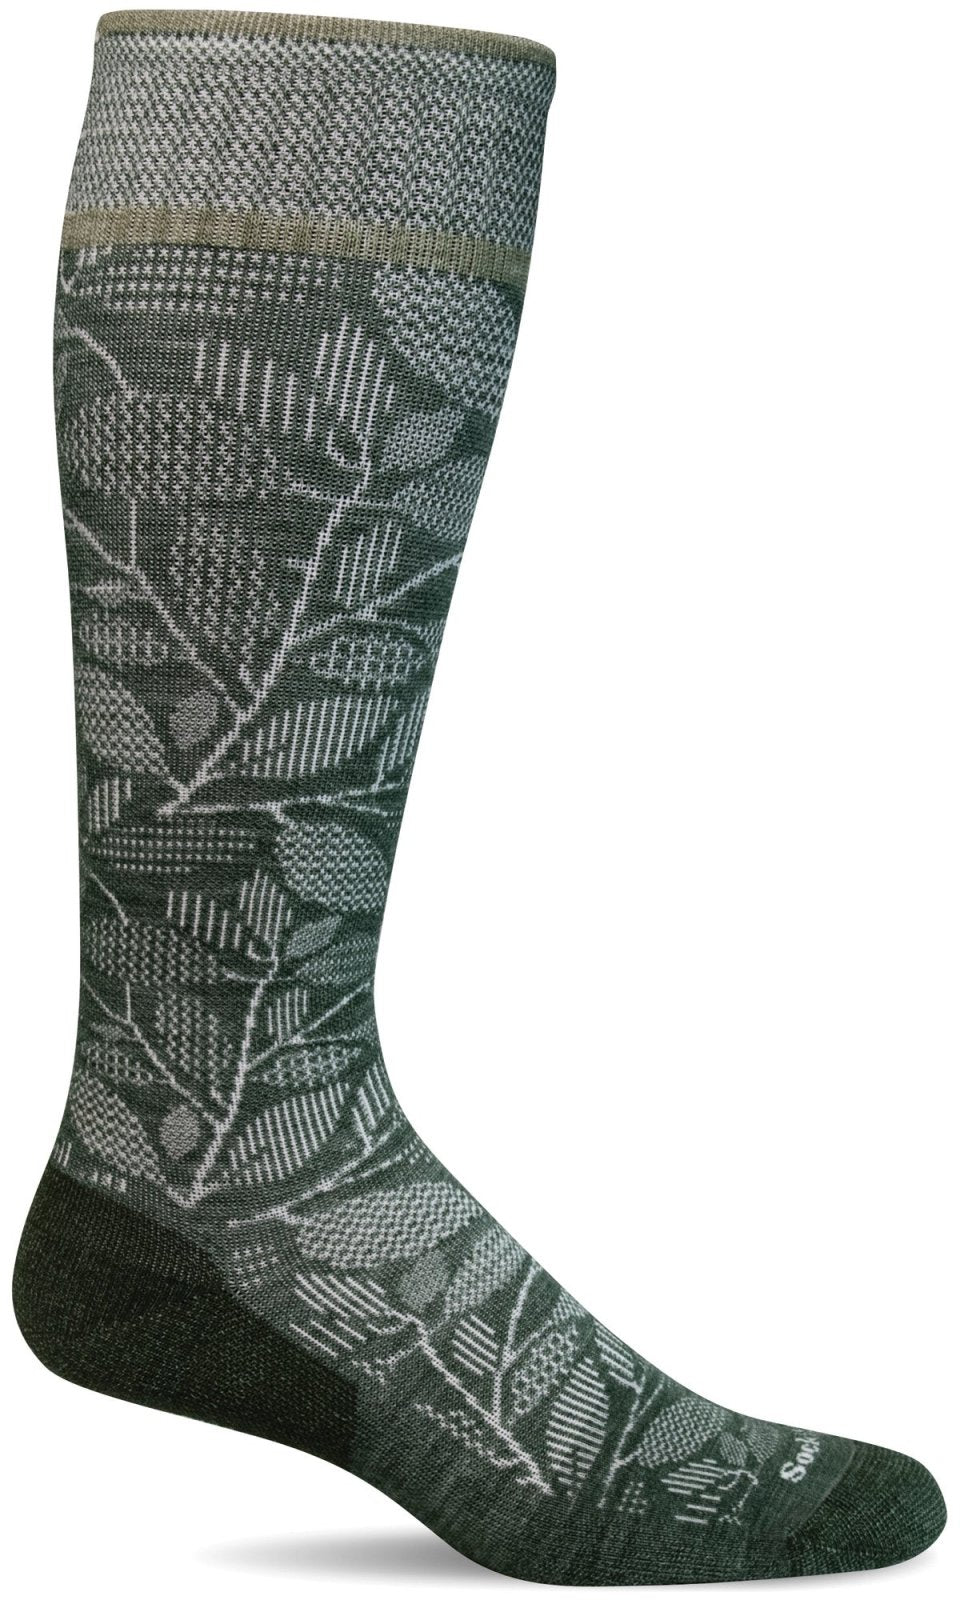 Women's Fauna | Firm Graduated Compression Socks - Merino Wool - Sockwell